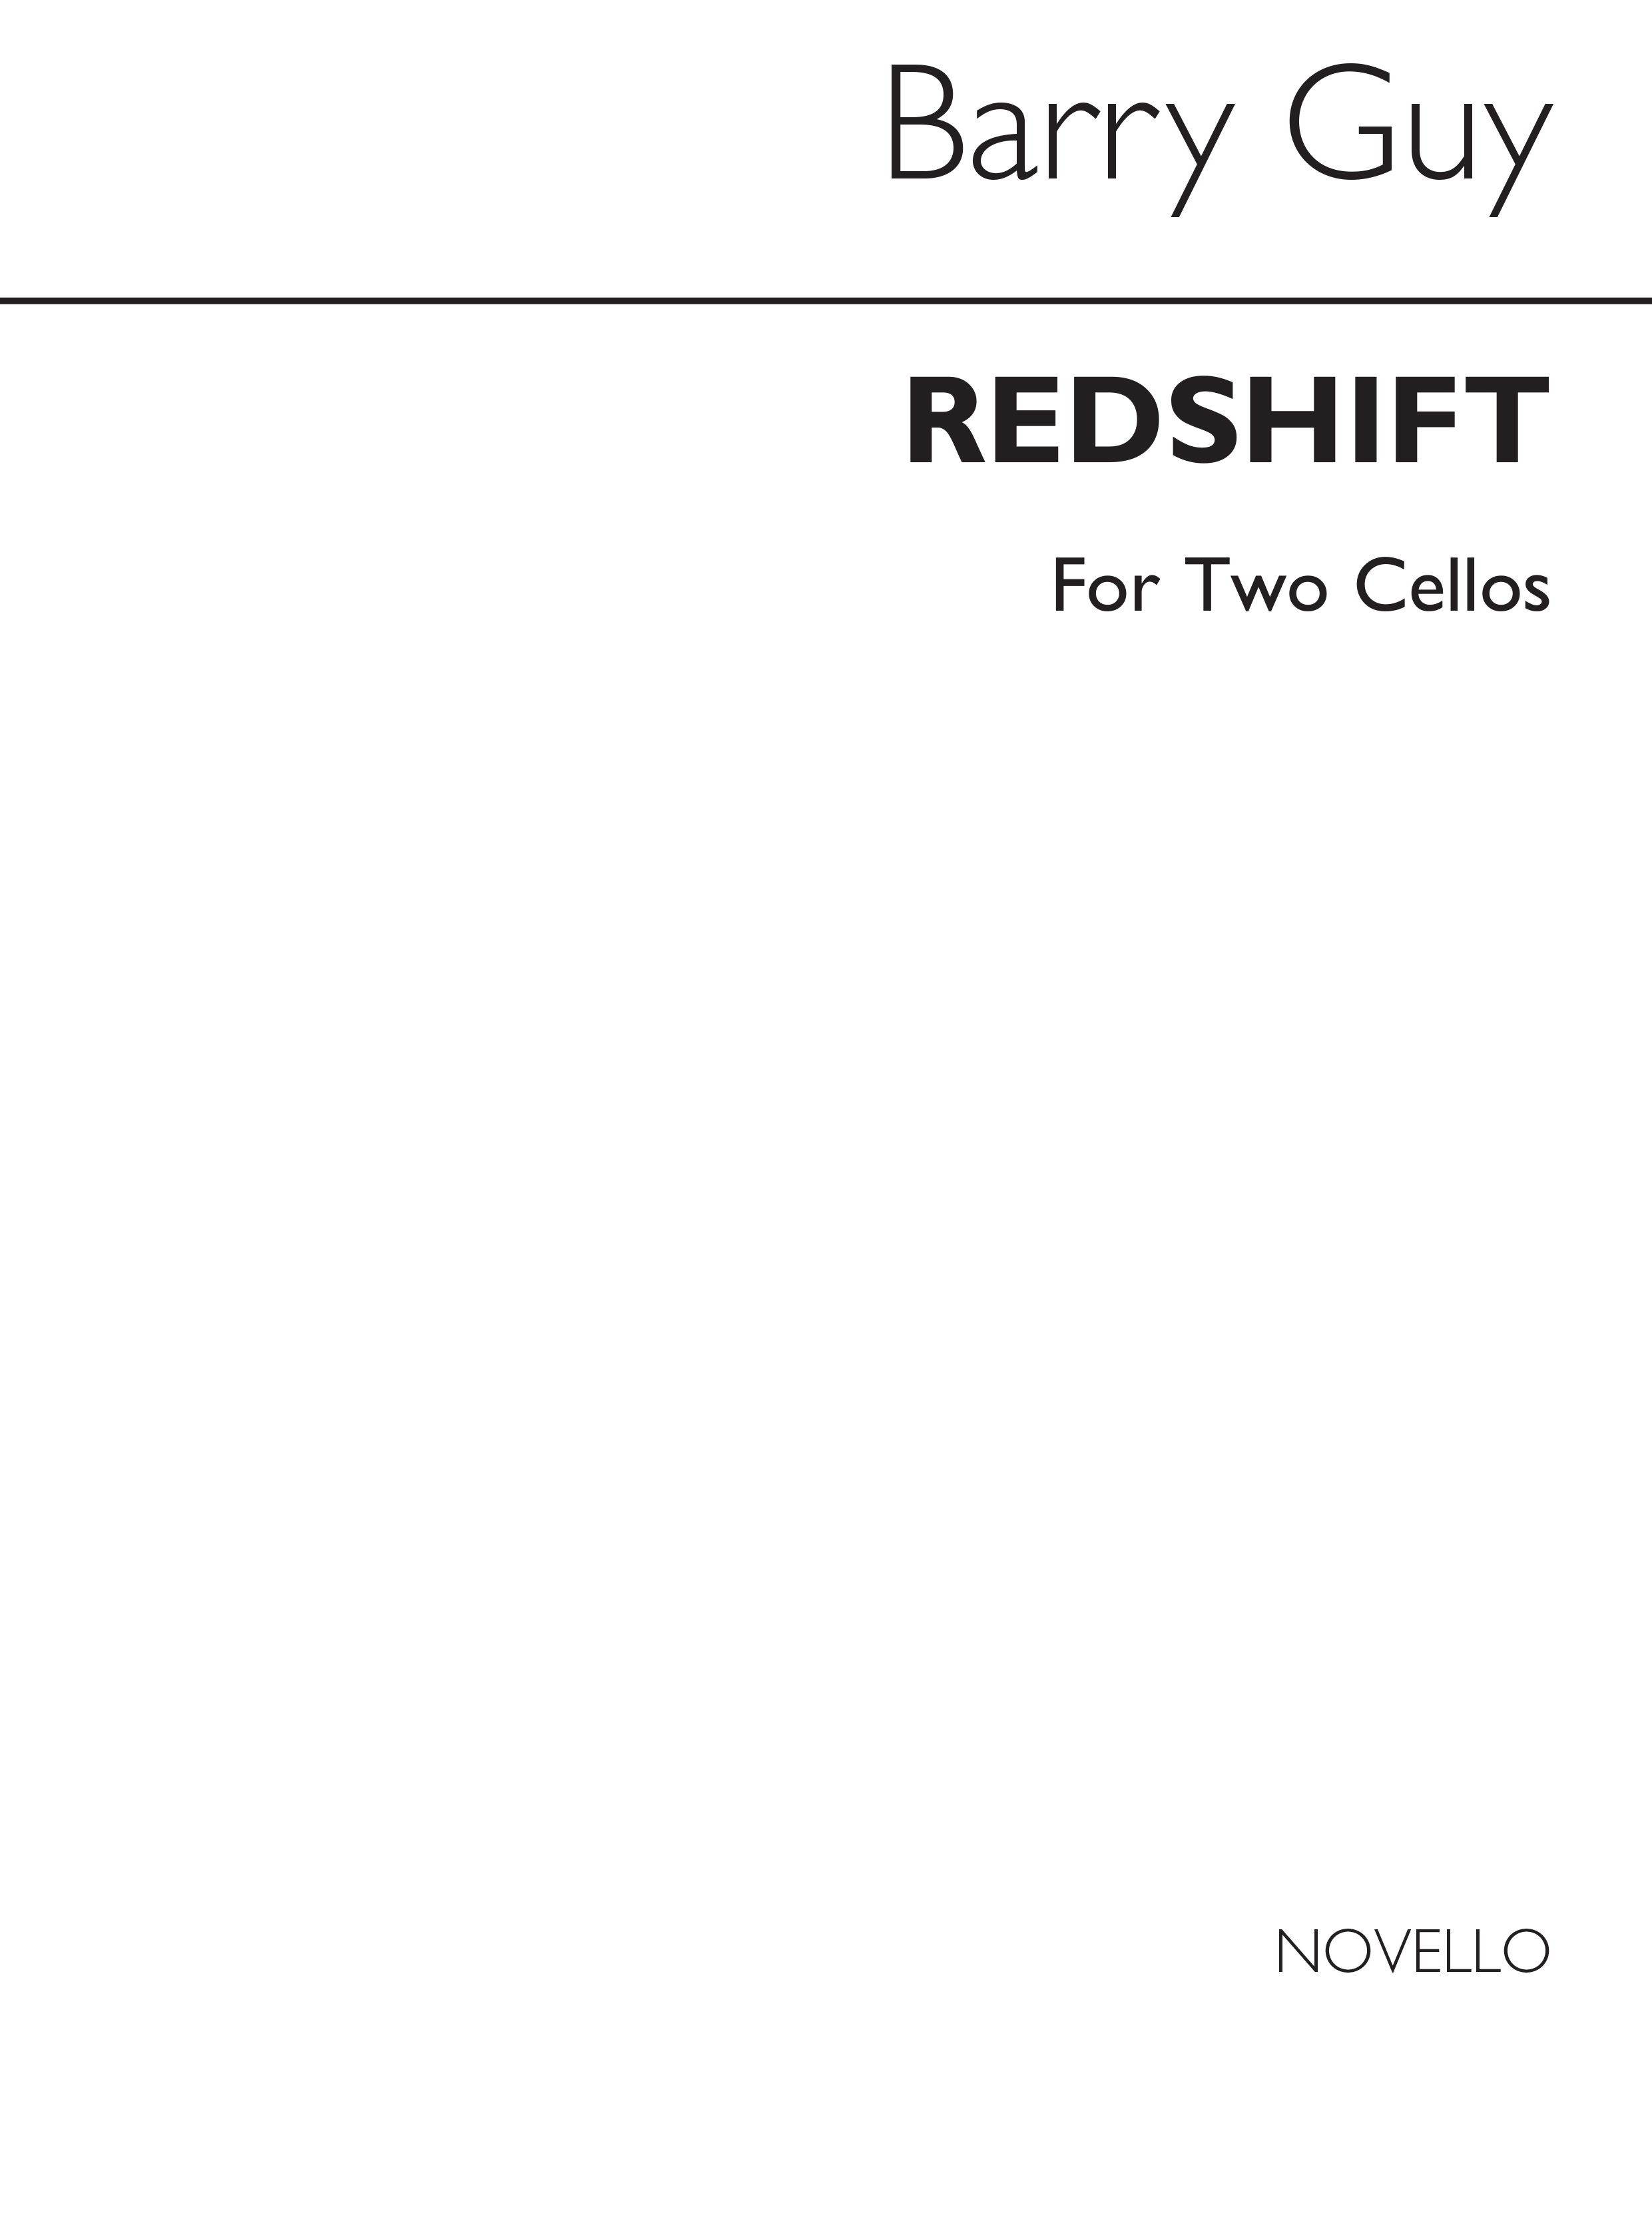 Guy Redshift 2 Cellos: Cello: Parts